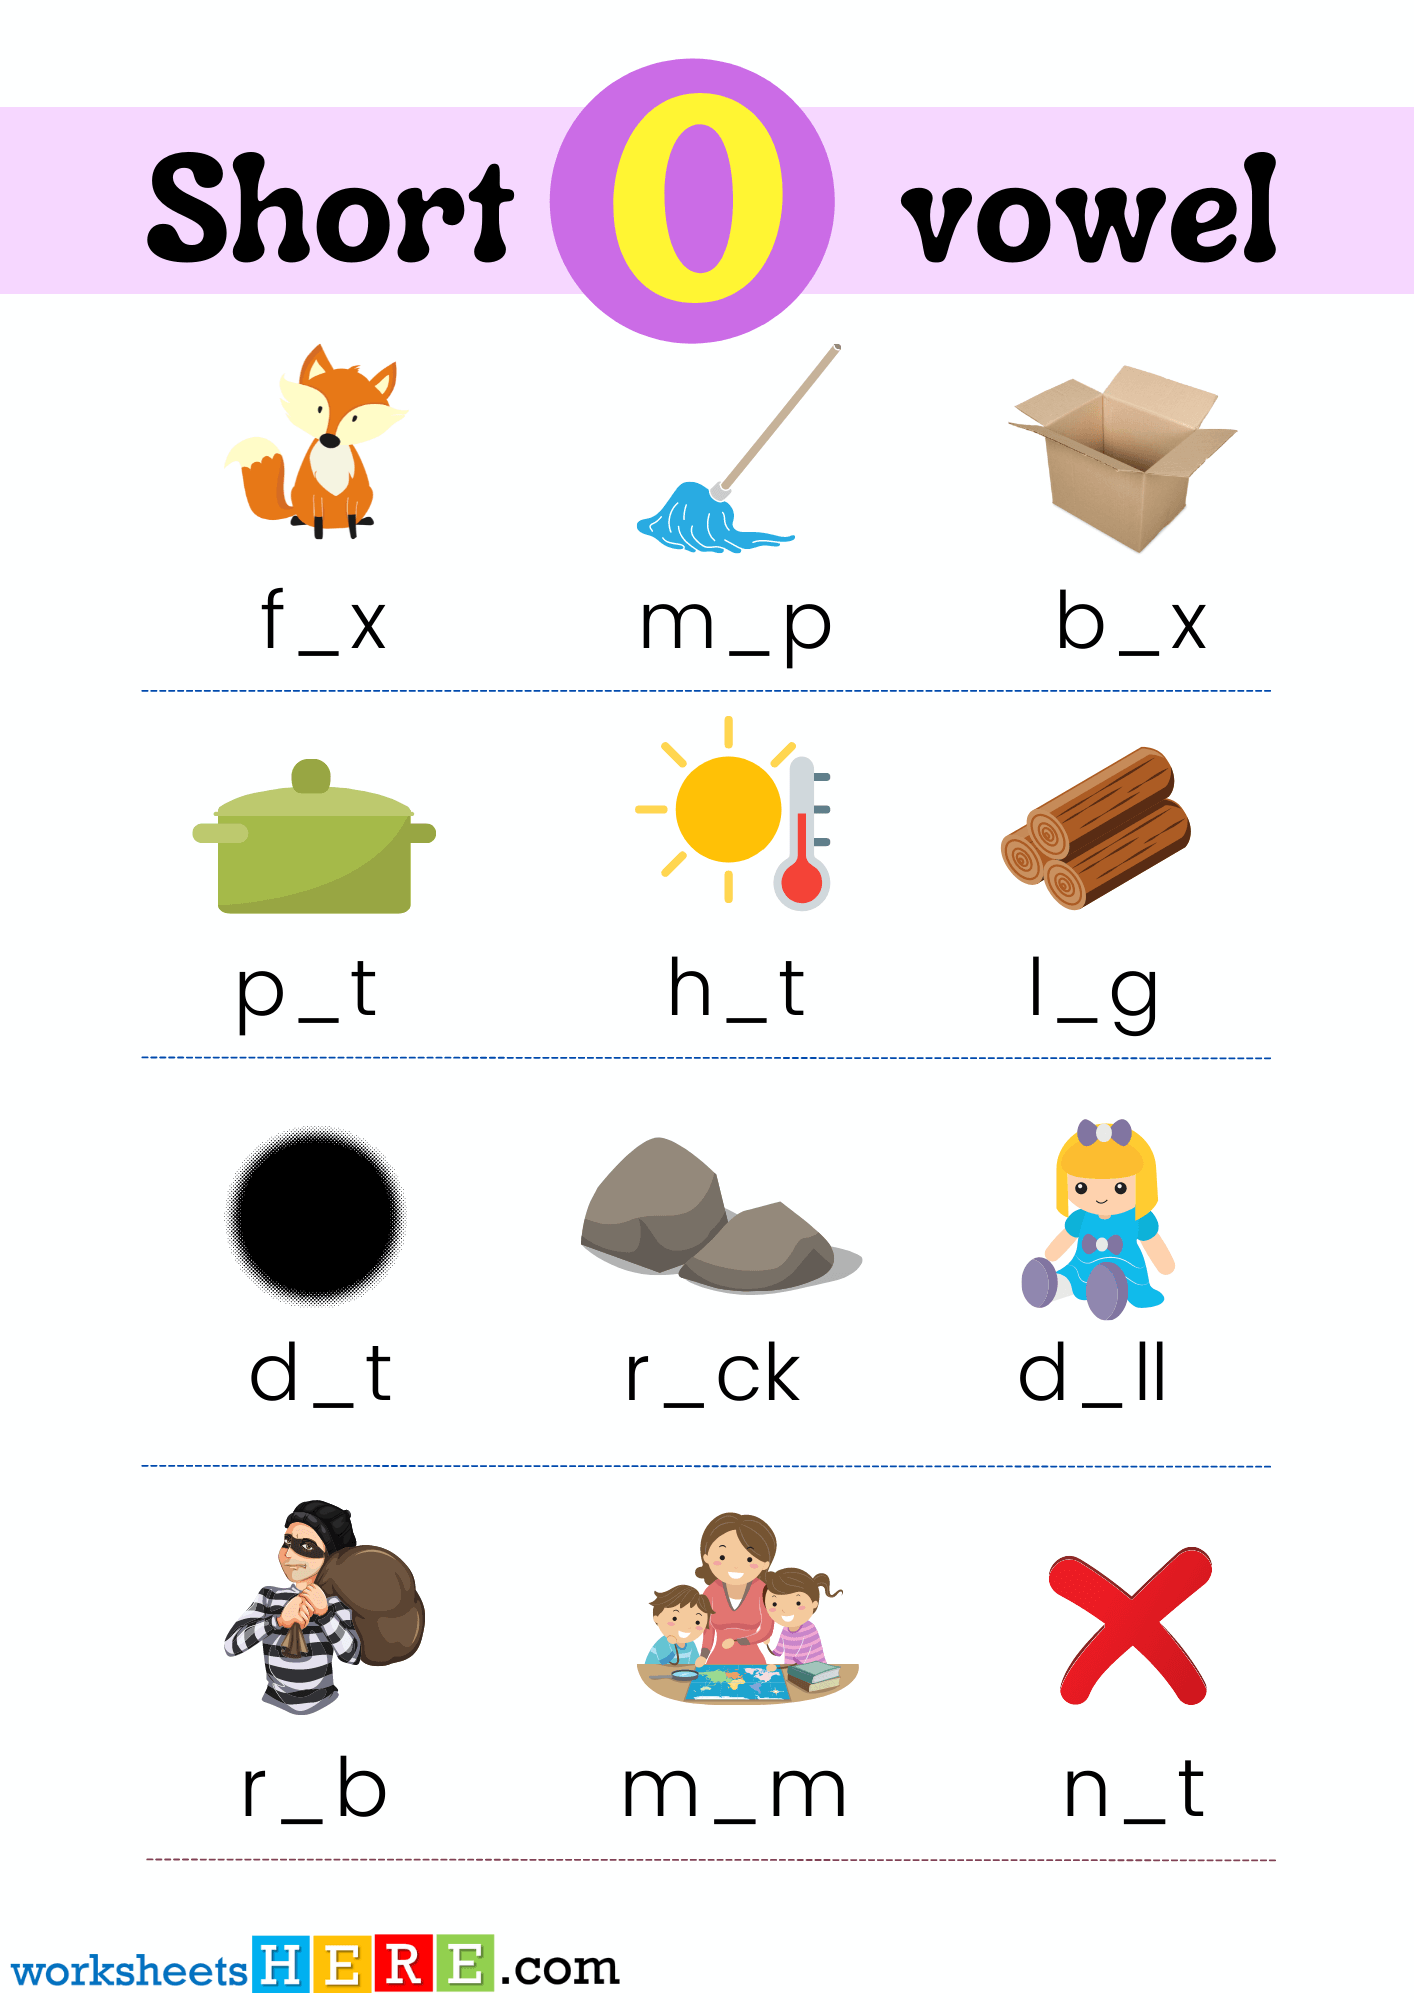 Find Missing Short Vowel O With Pictures PDF Worksheet For Kindergarten and Kids